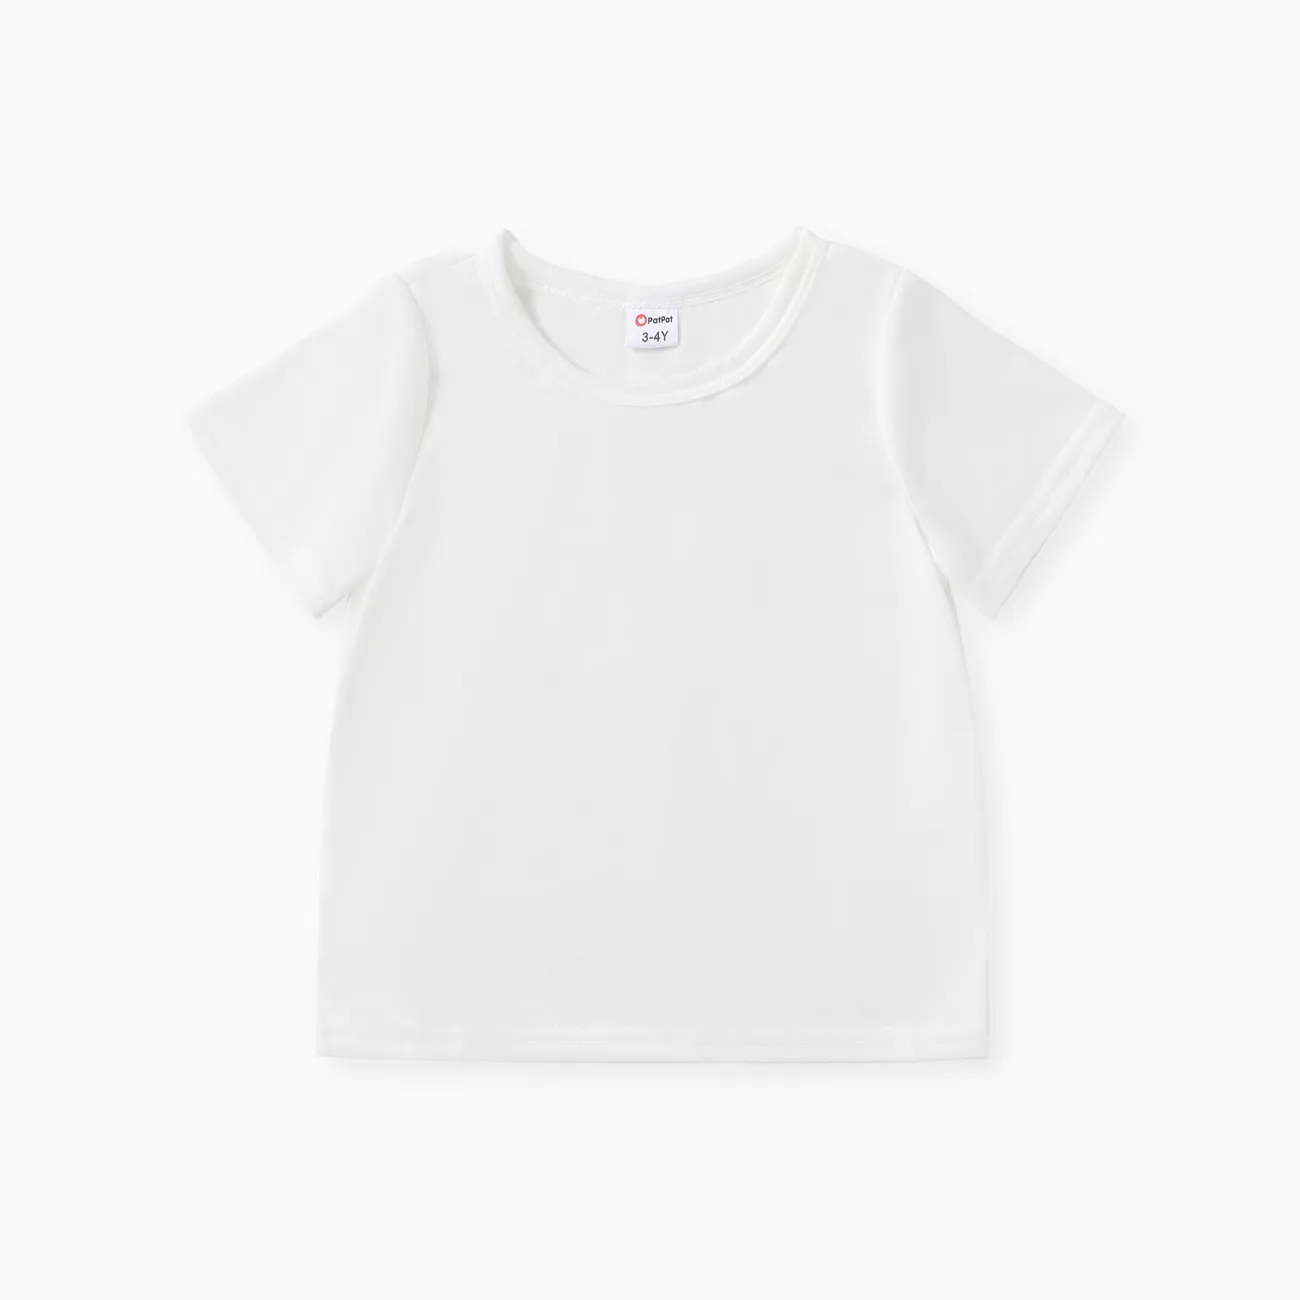 Enfant en bas âge Garçon Basique Manches courtes T-Shirt Blanc big image 1